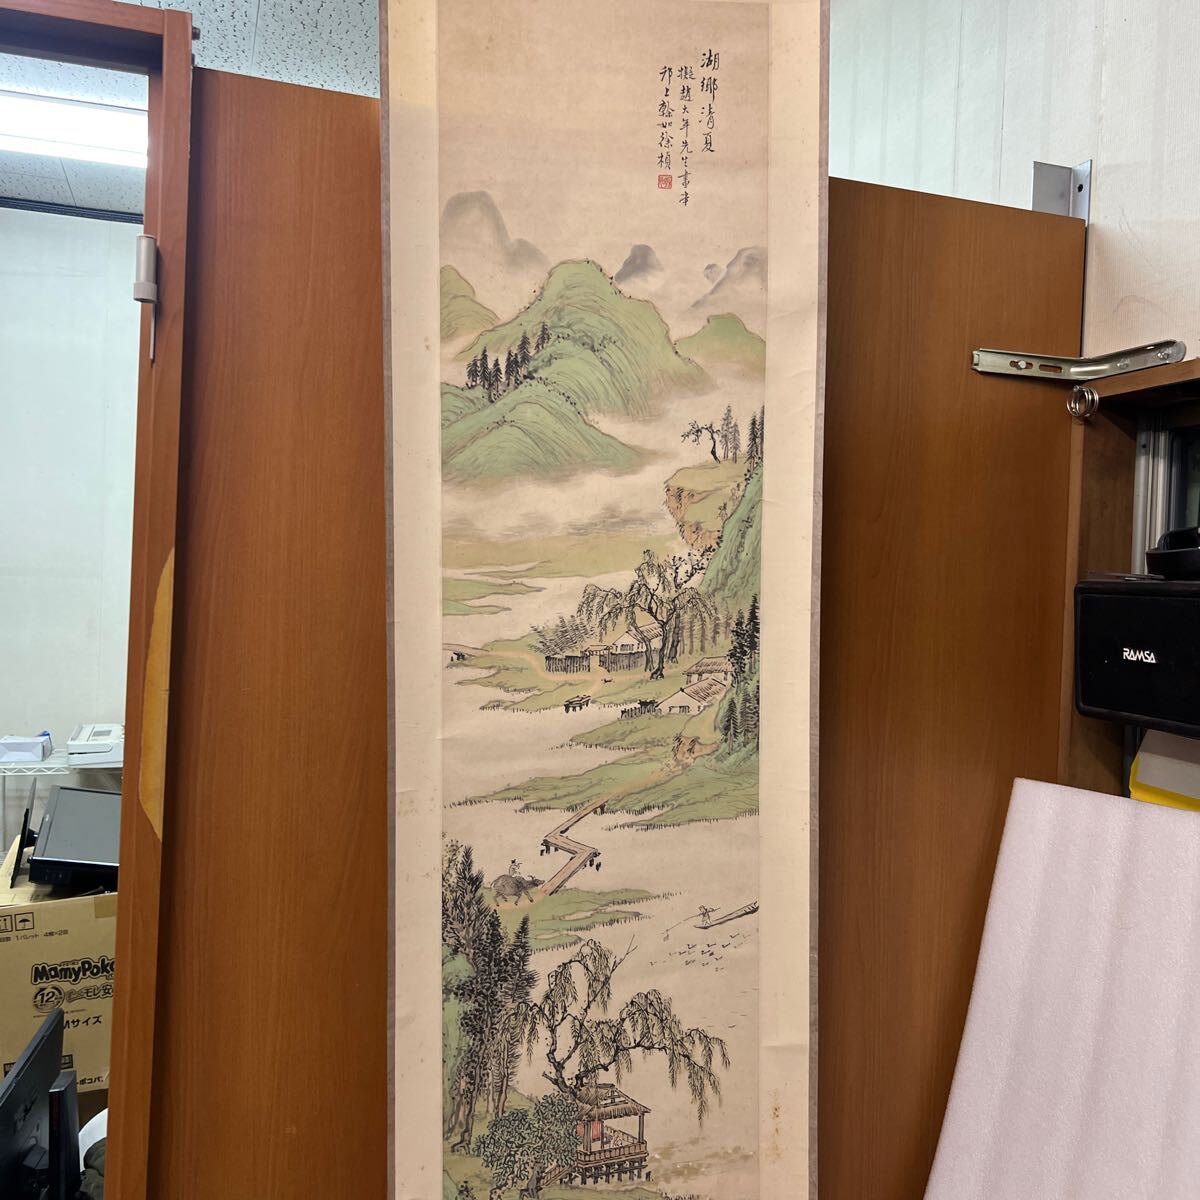 تفاصيل التمرير المعلقة غير معروفة A4, تلوين, اللوحة اليابانية, منظر جمالي, فوجيتسو